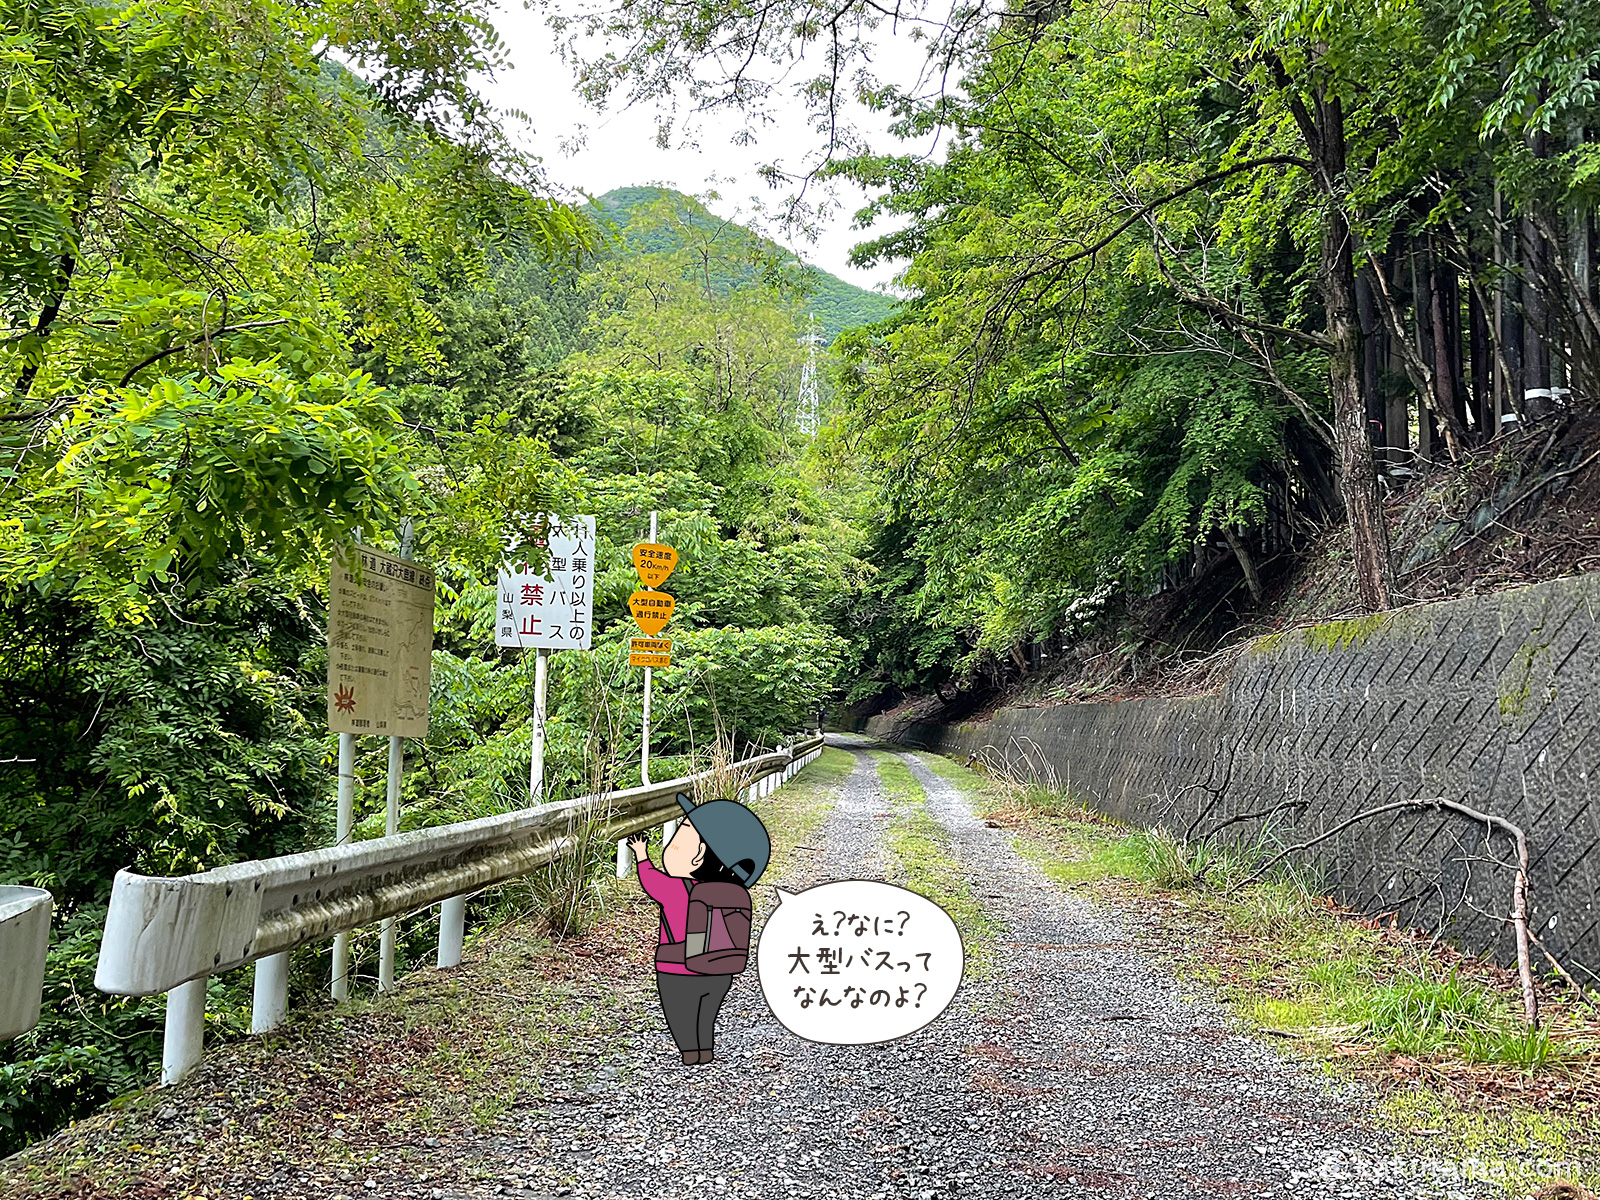 滝子山、スミ沢ルート方面へ向かって林道を進む写真と登山者のイラスト